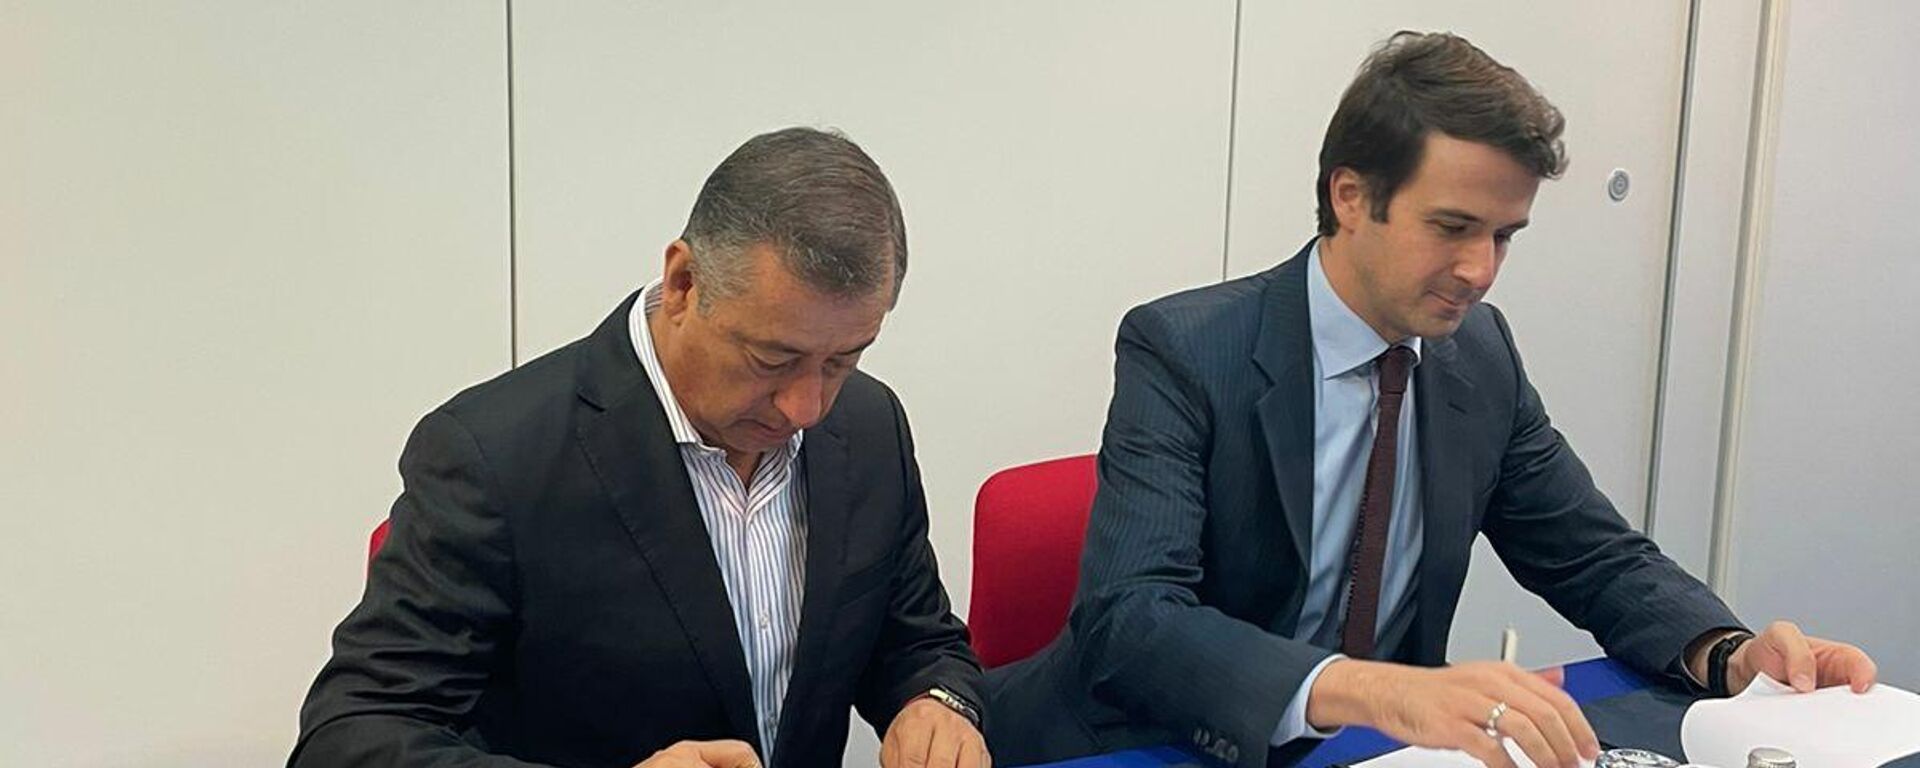 El director de Birmex, Pedro Zenteno Santella, firmando el acuerdo junto a Azer Mamedov, uno de los directores del RDIF - Sputnik Mundo, 1920, 14.10.2021